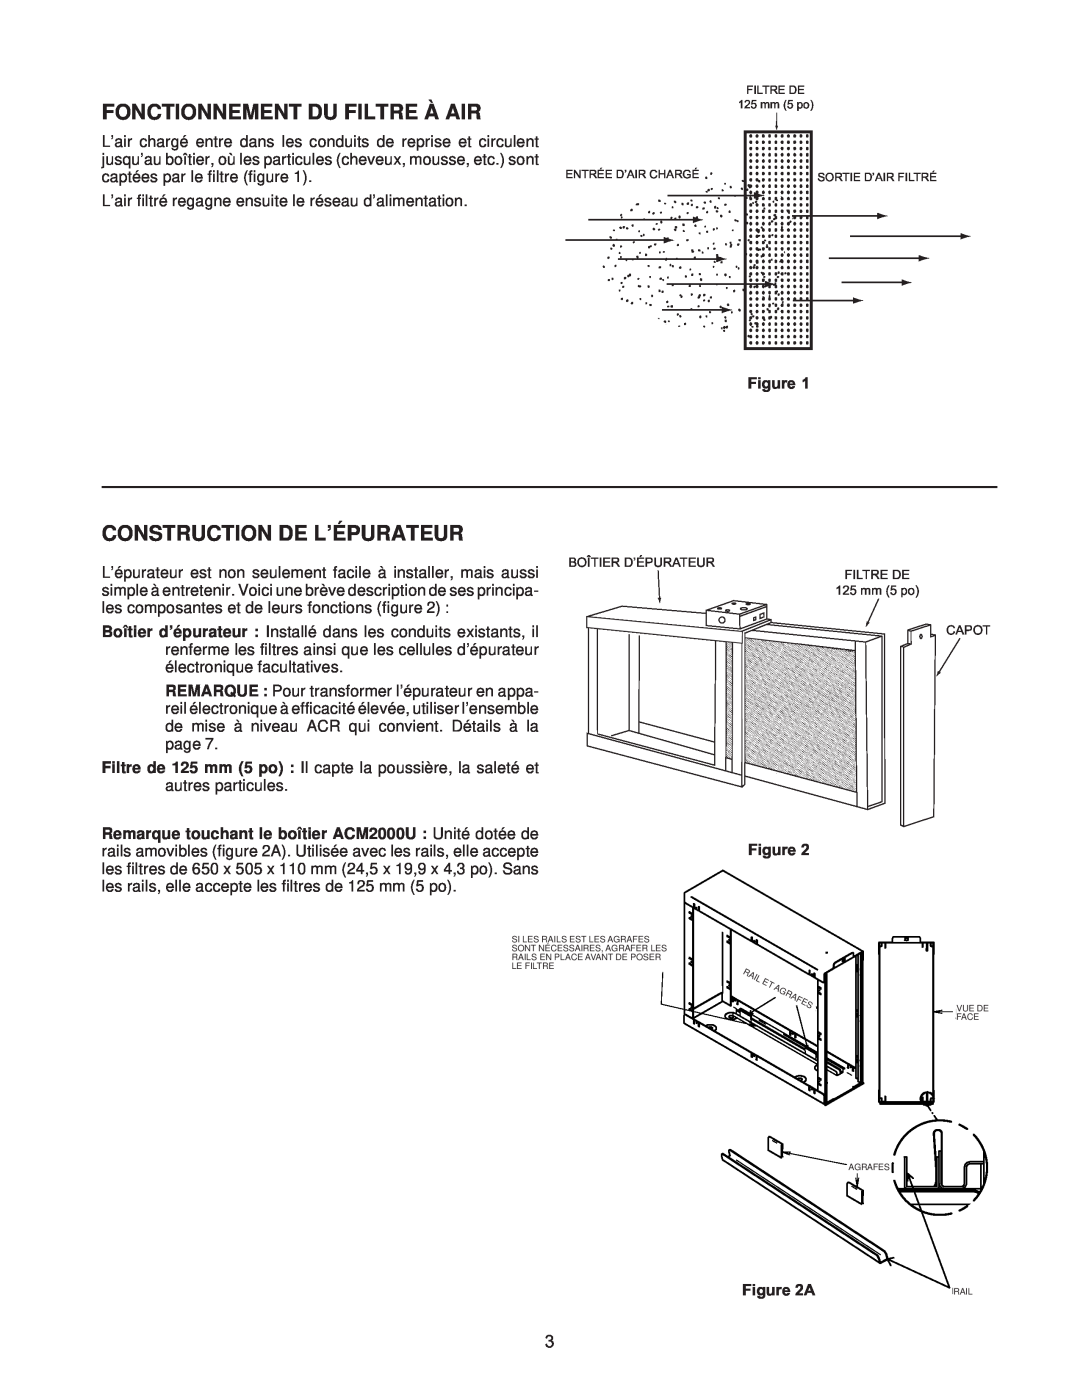 White Rodgers pmnACM/ACB owner manual Fonctionnement Du Filtre À Air, Construction De L’Épurateur 